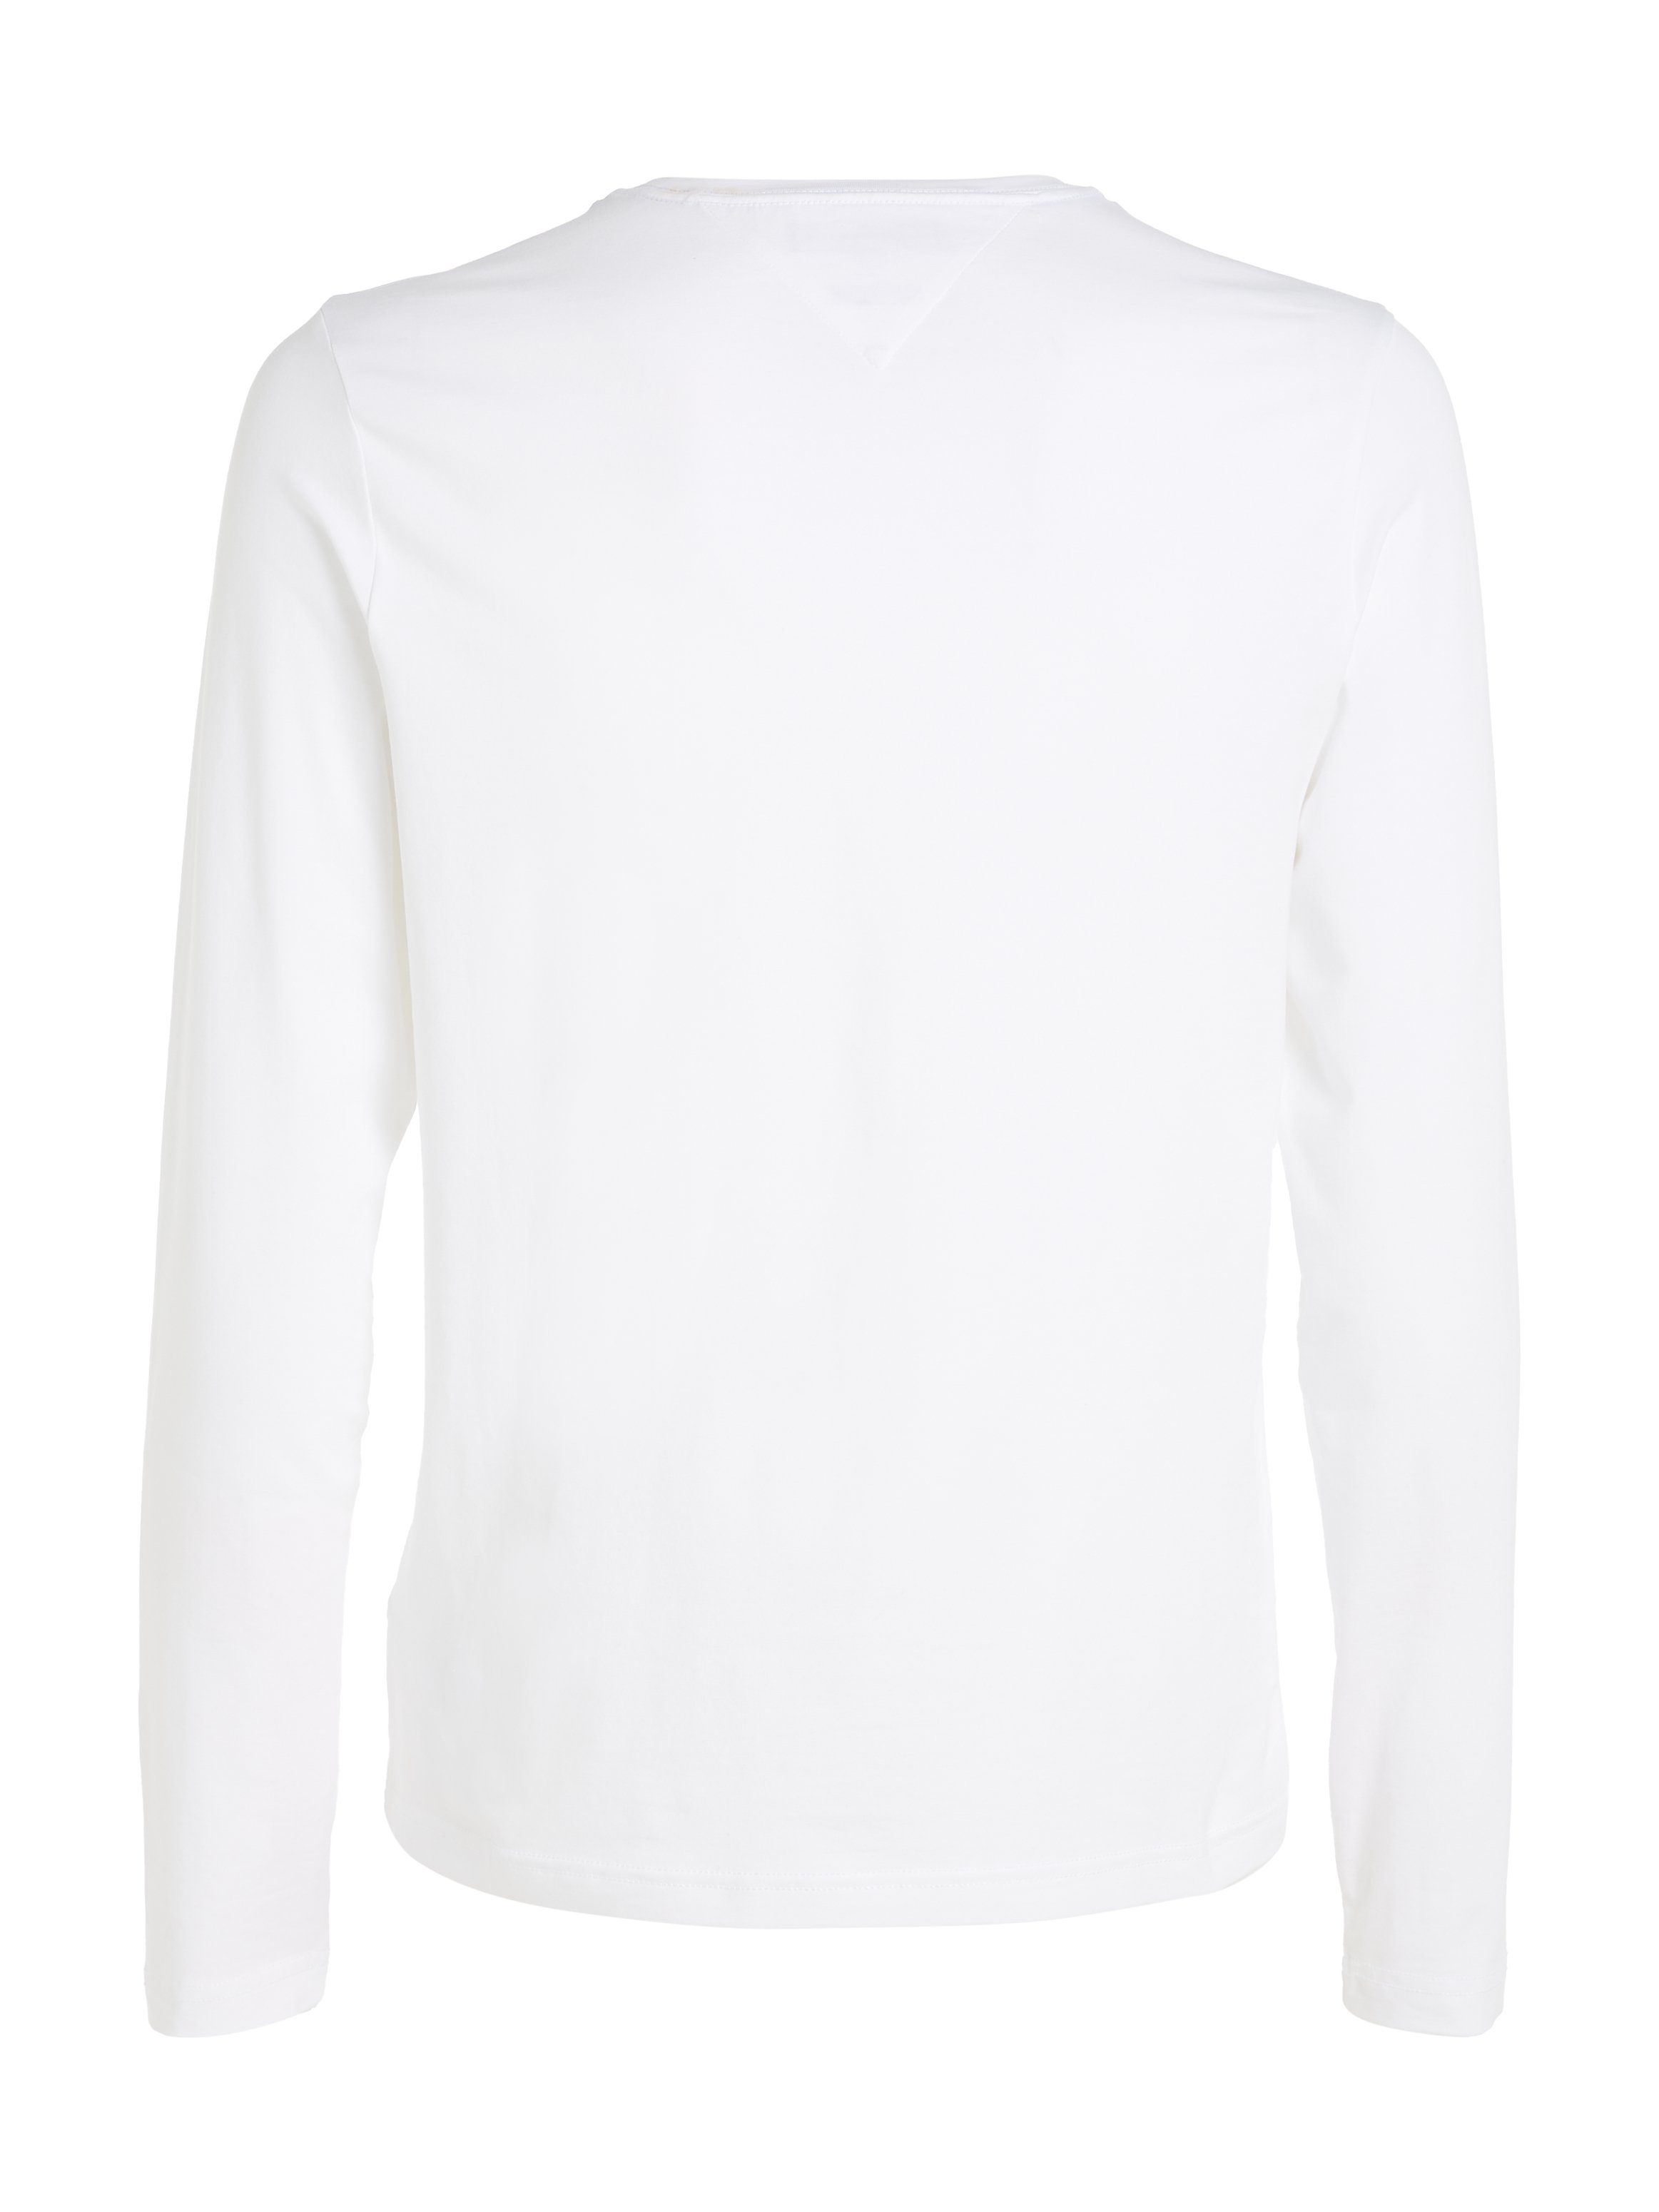 Tommy Hilfiger Langarmshirt STRETCH biologischem white FIT SLIM LONG Baumwollstretch aus SLEEVE